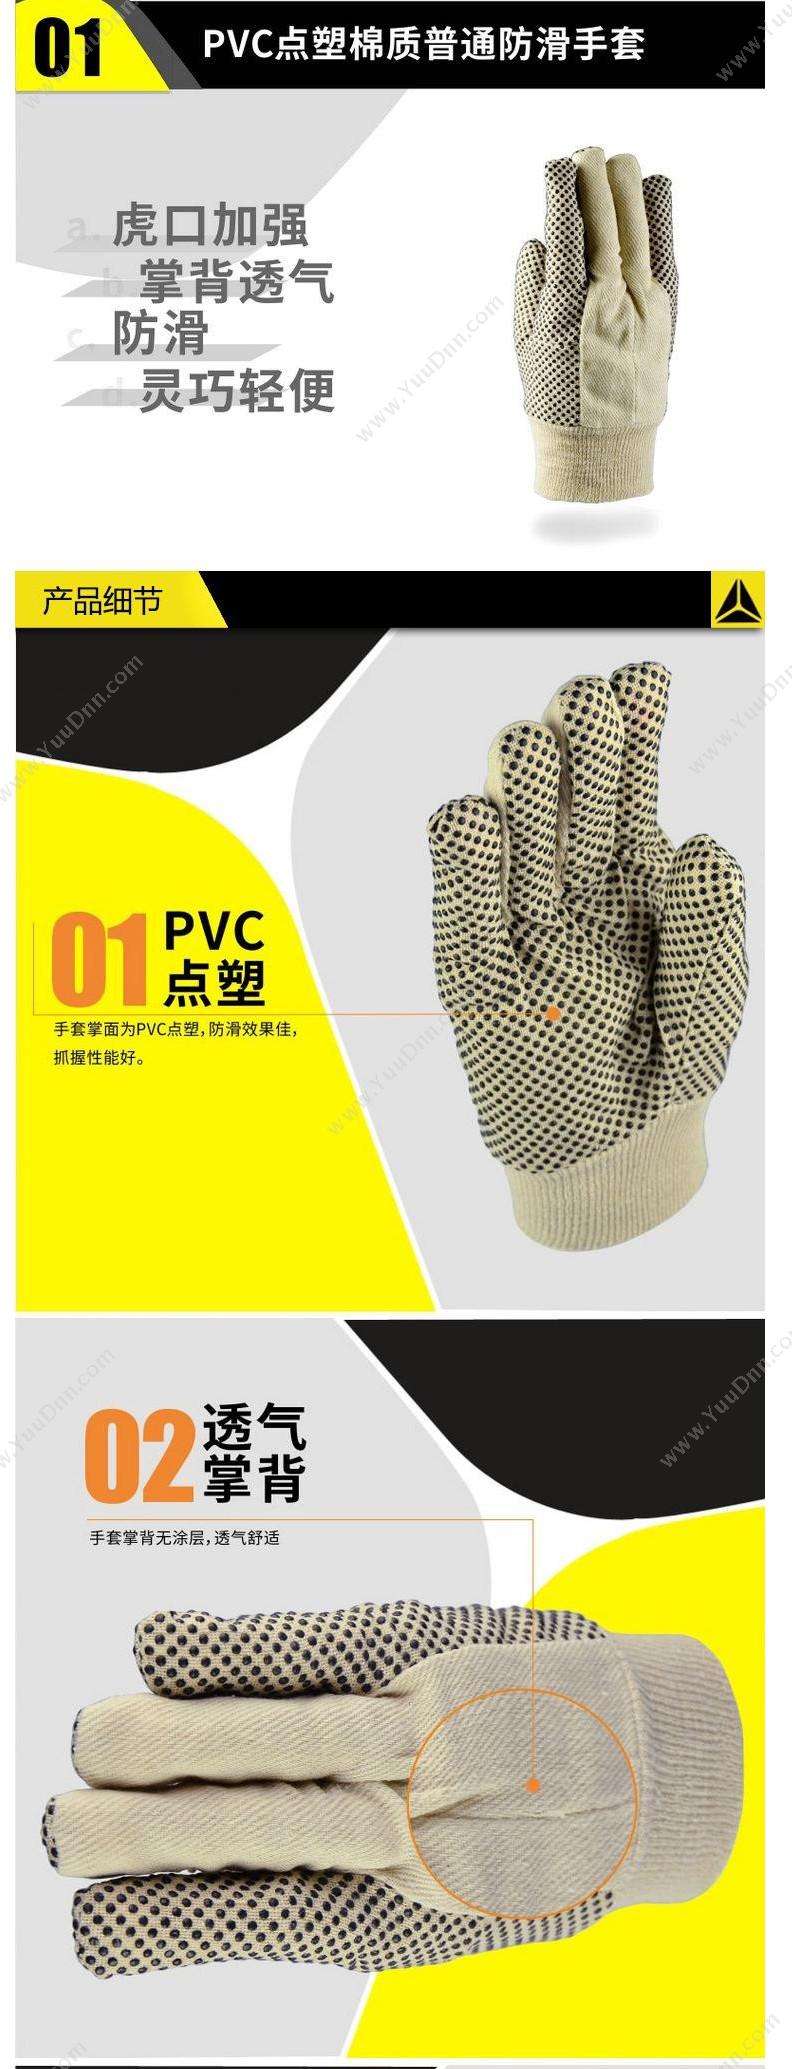 代尔塔 Delta 208007 PVC点塑棉质手套 CP149/10 米黄色 12副/打 普通手套